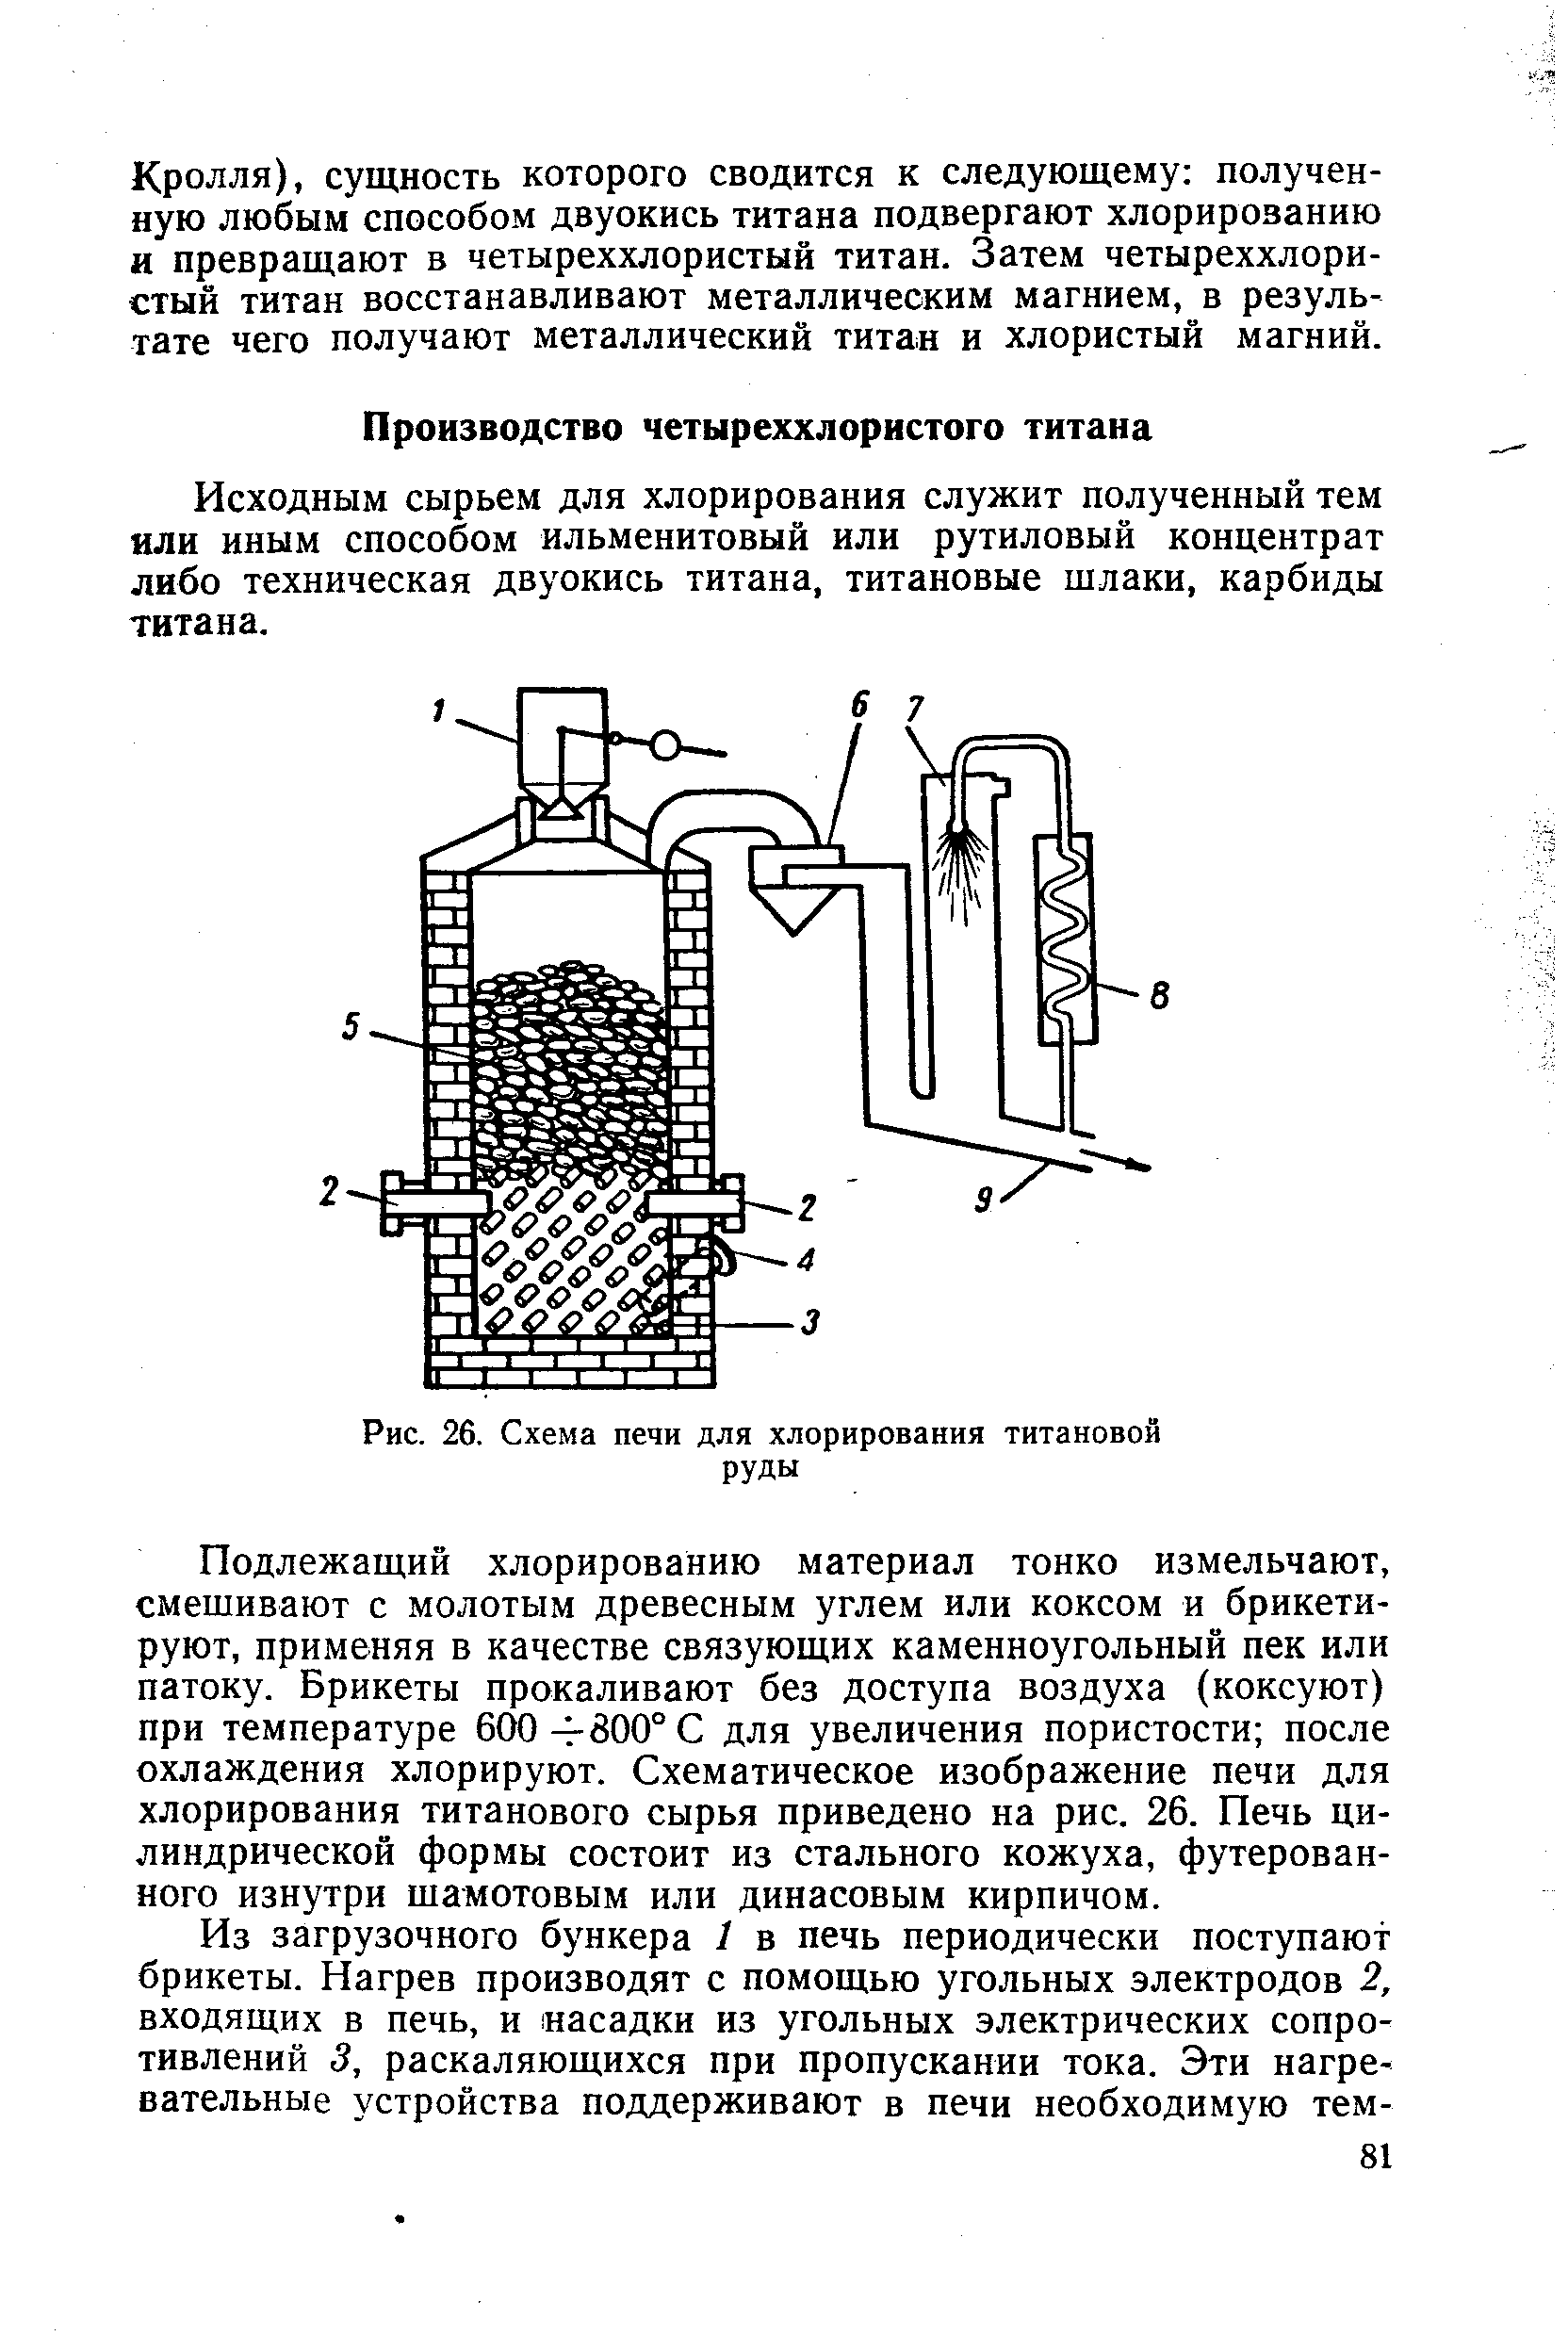 Рис. 26. Схема печи для хлорирования титановой руды
